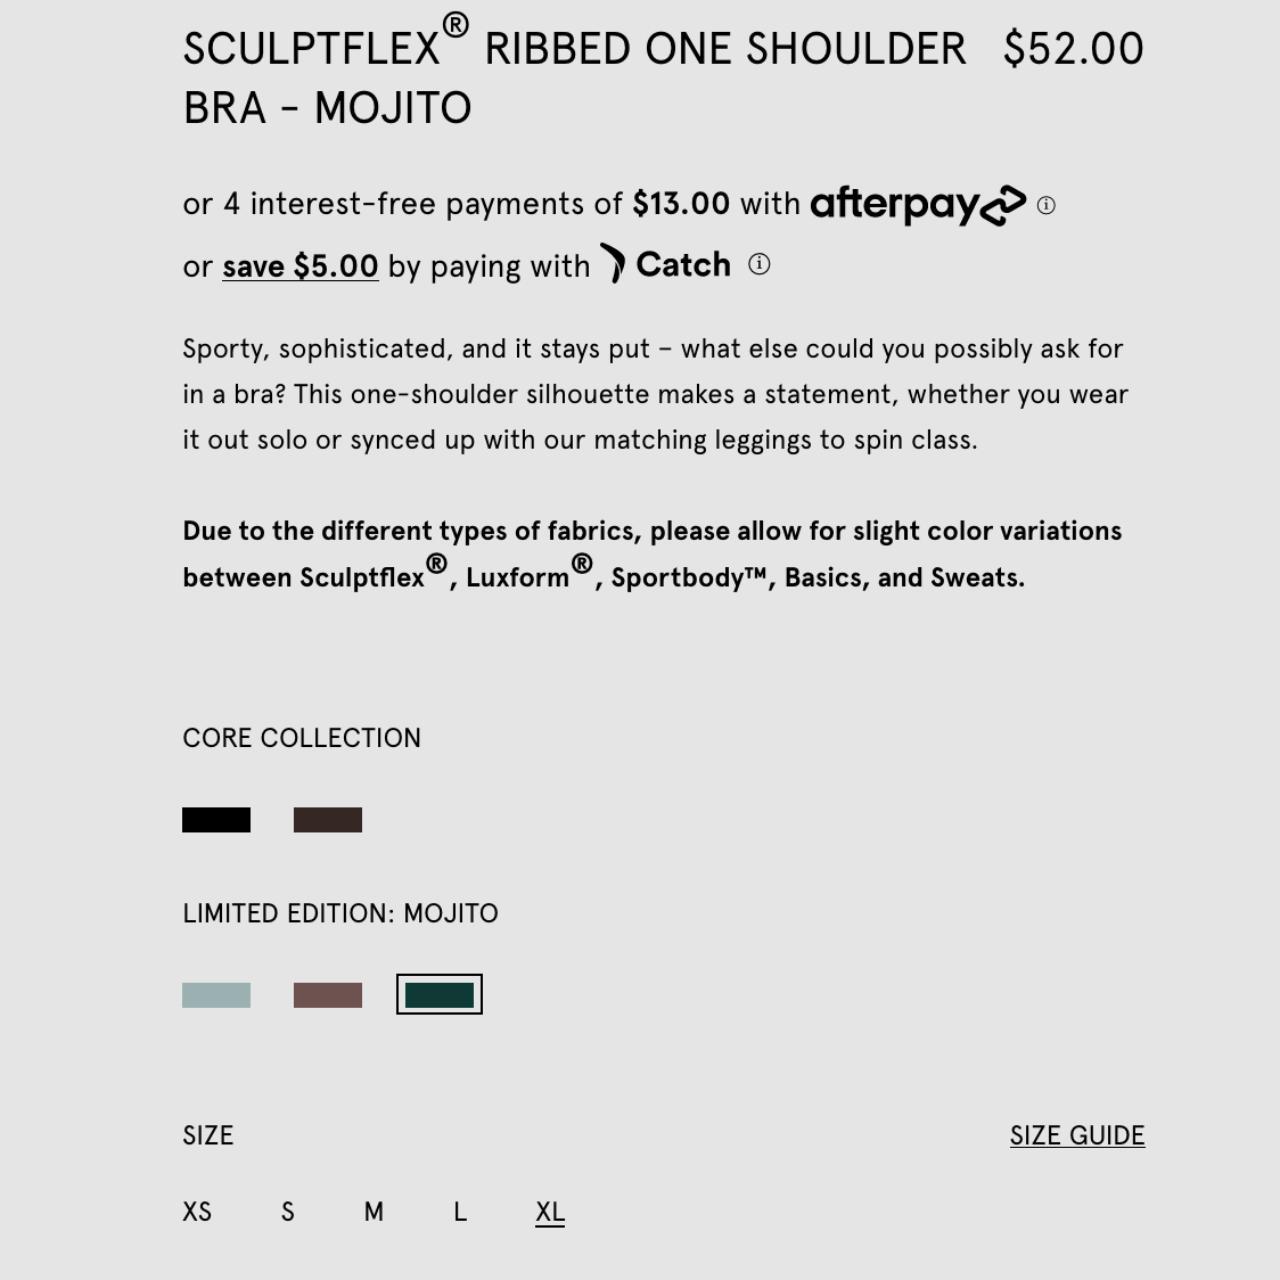 SET ACTIVE Sculptflex Ribbed One Shoulder Bra